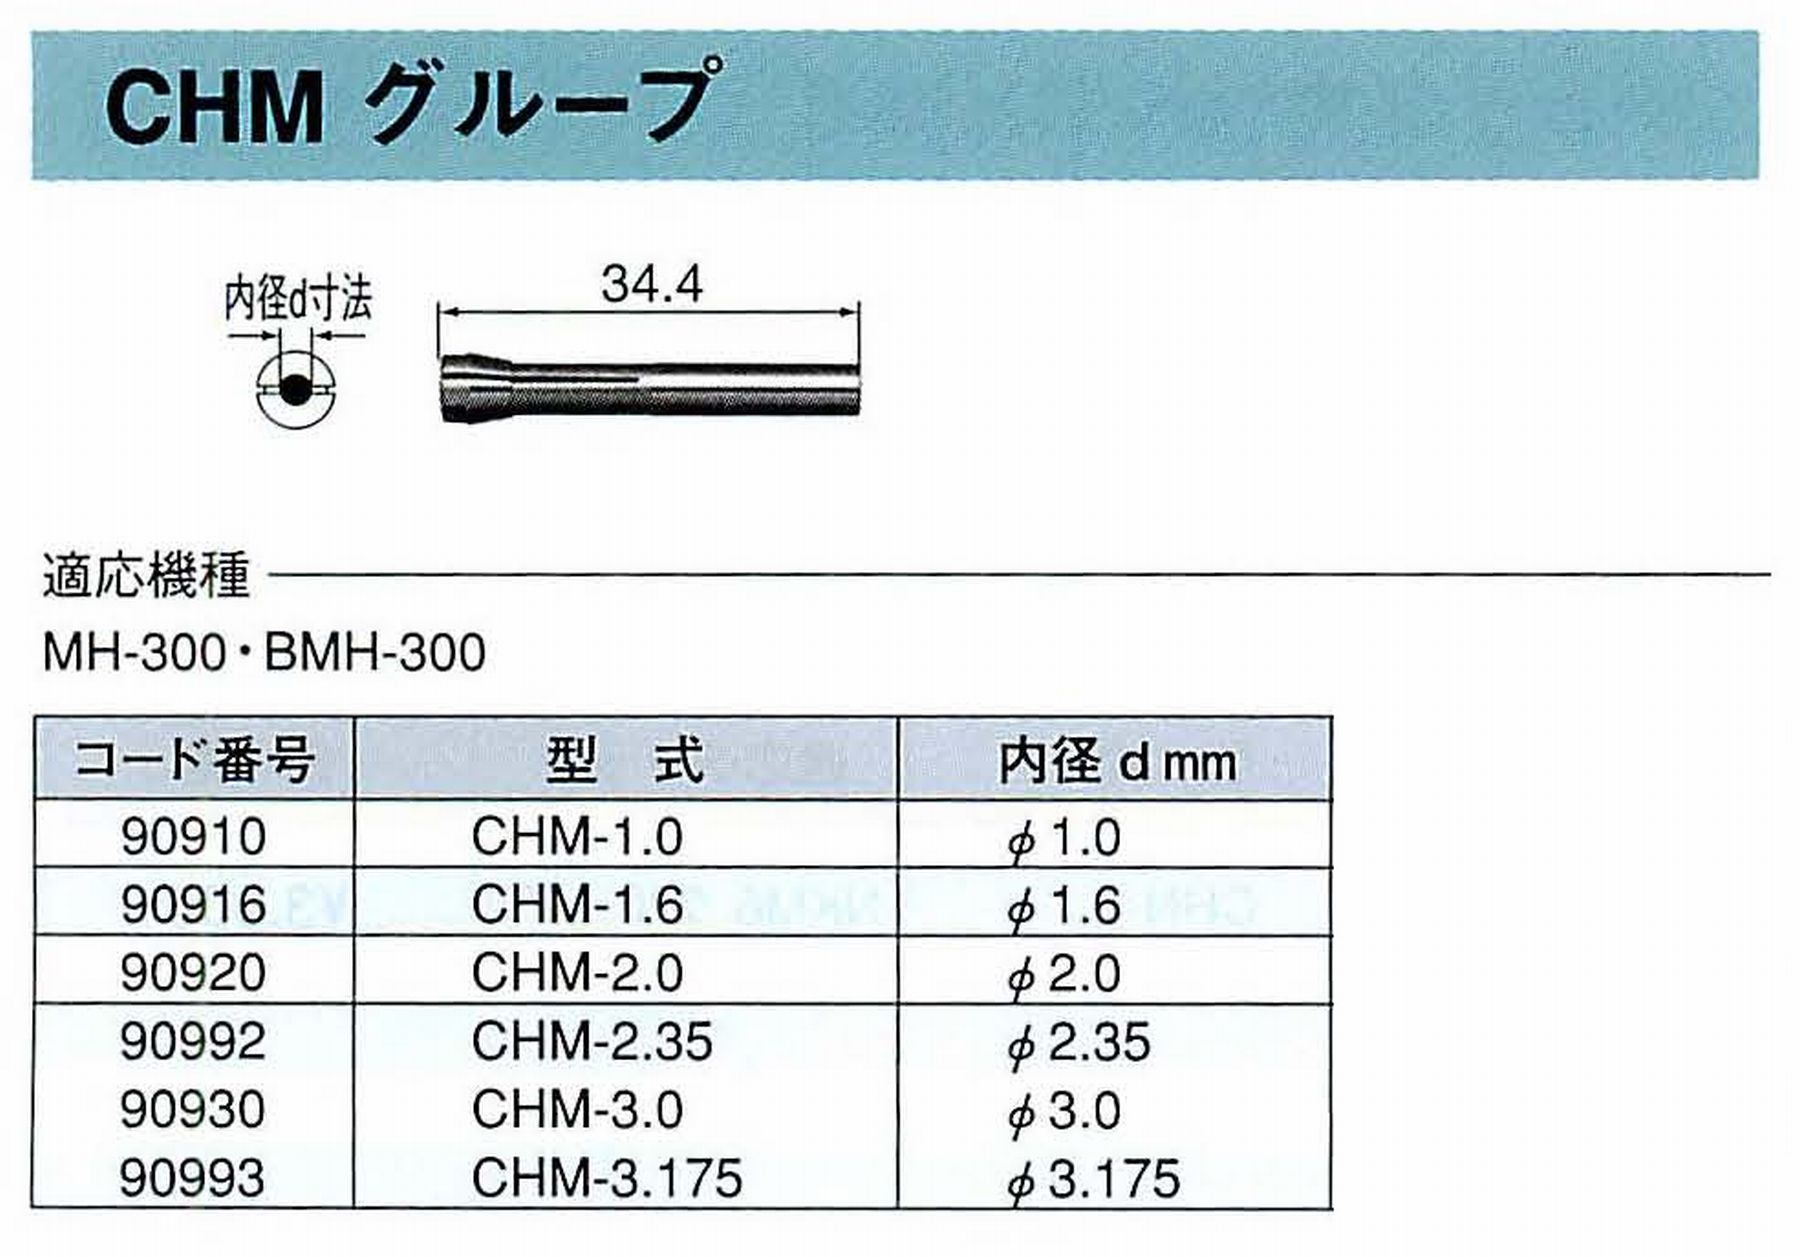 ナカニシ/NAKANISHI コレットチャック コード番号 90910 型式 CHM-1.0 内径:Φ1.0